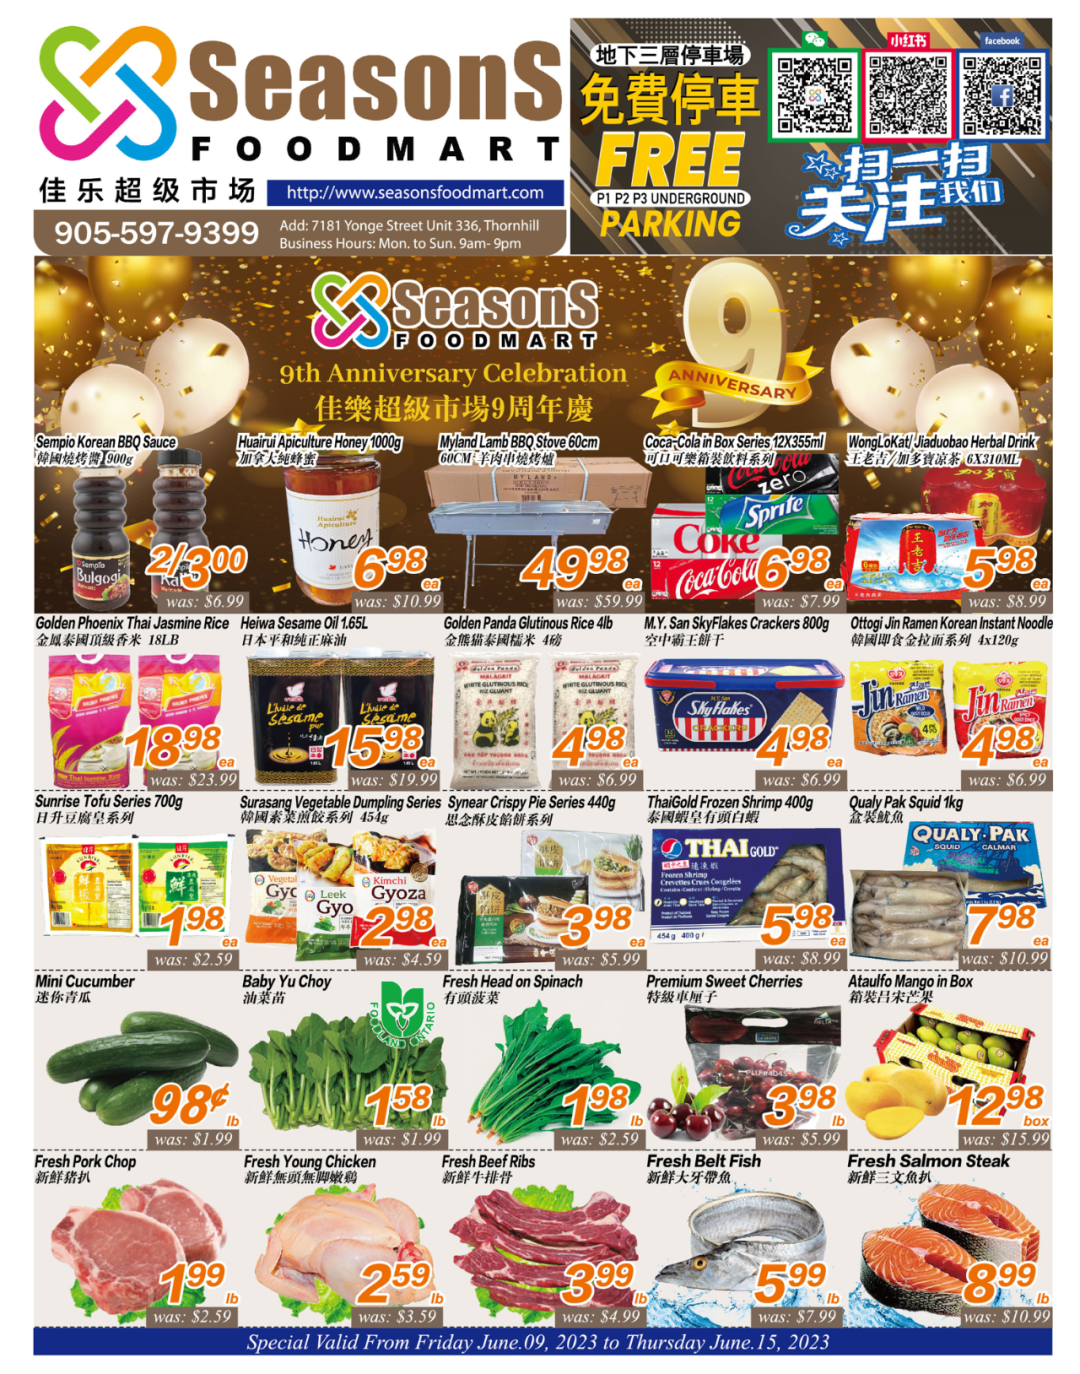 佳乐超市 Seasons Foodmart Flyer 2023年6月23日--6月29日